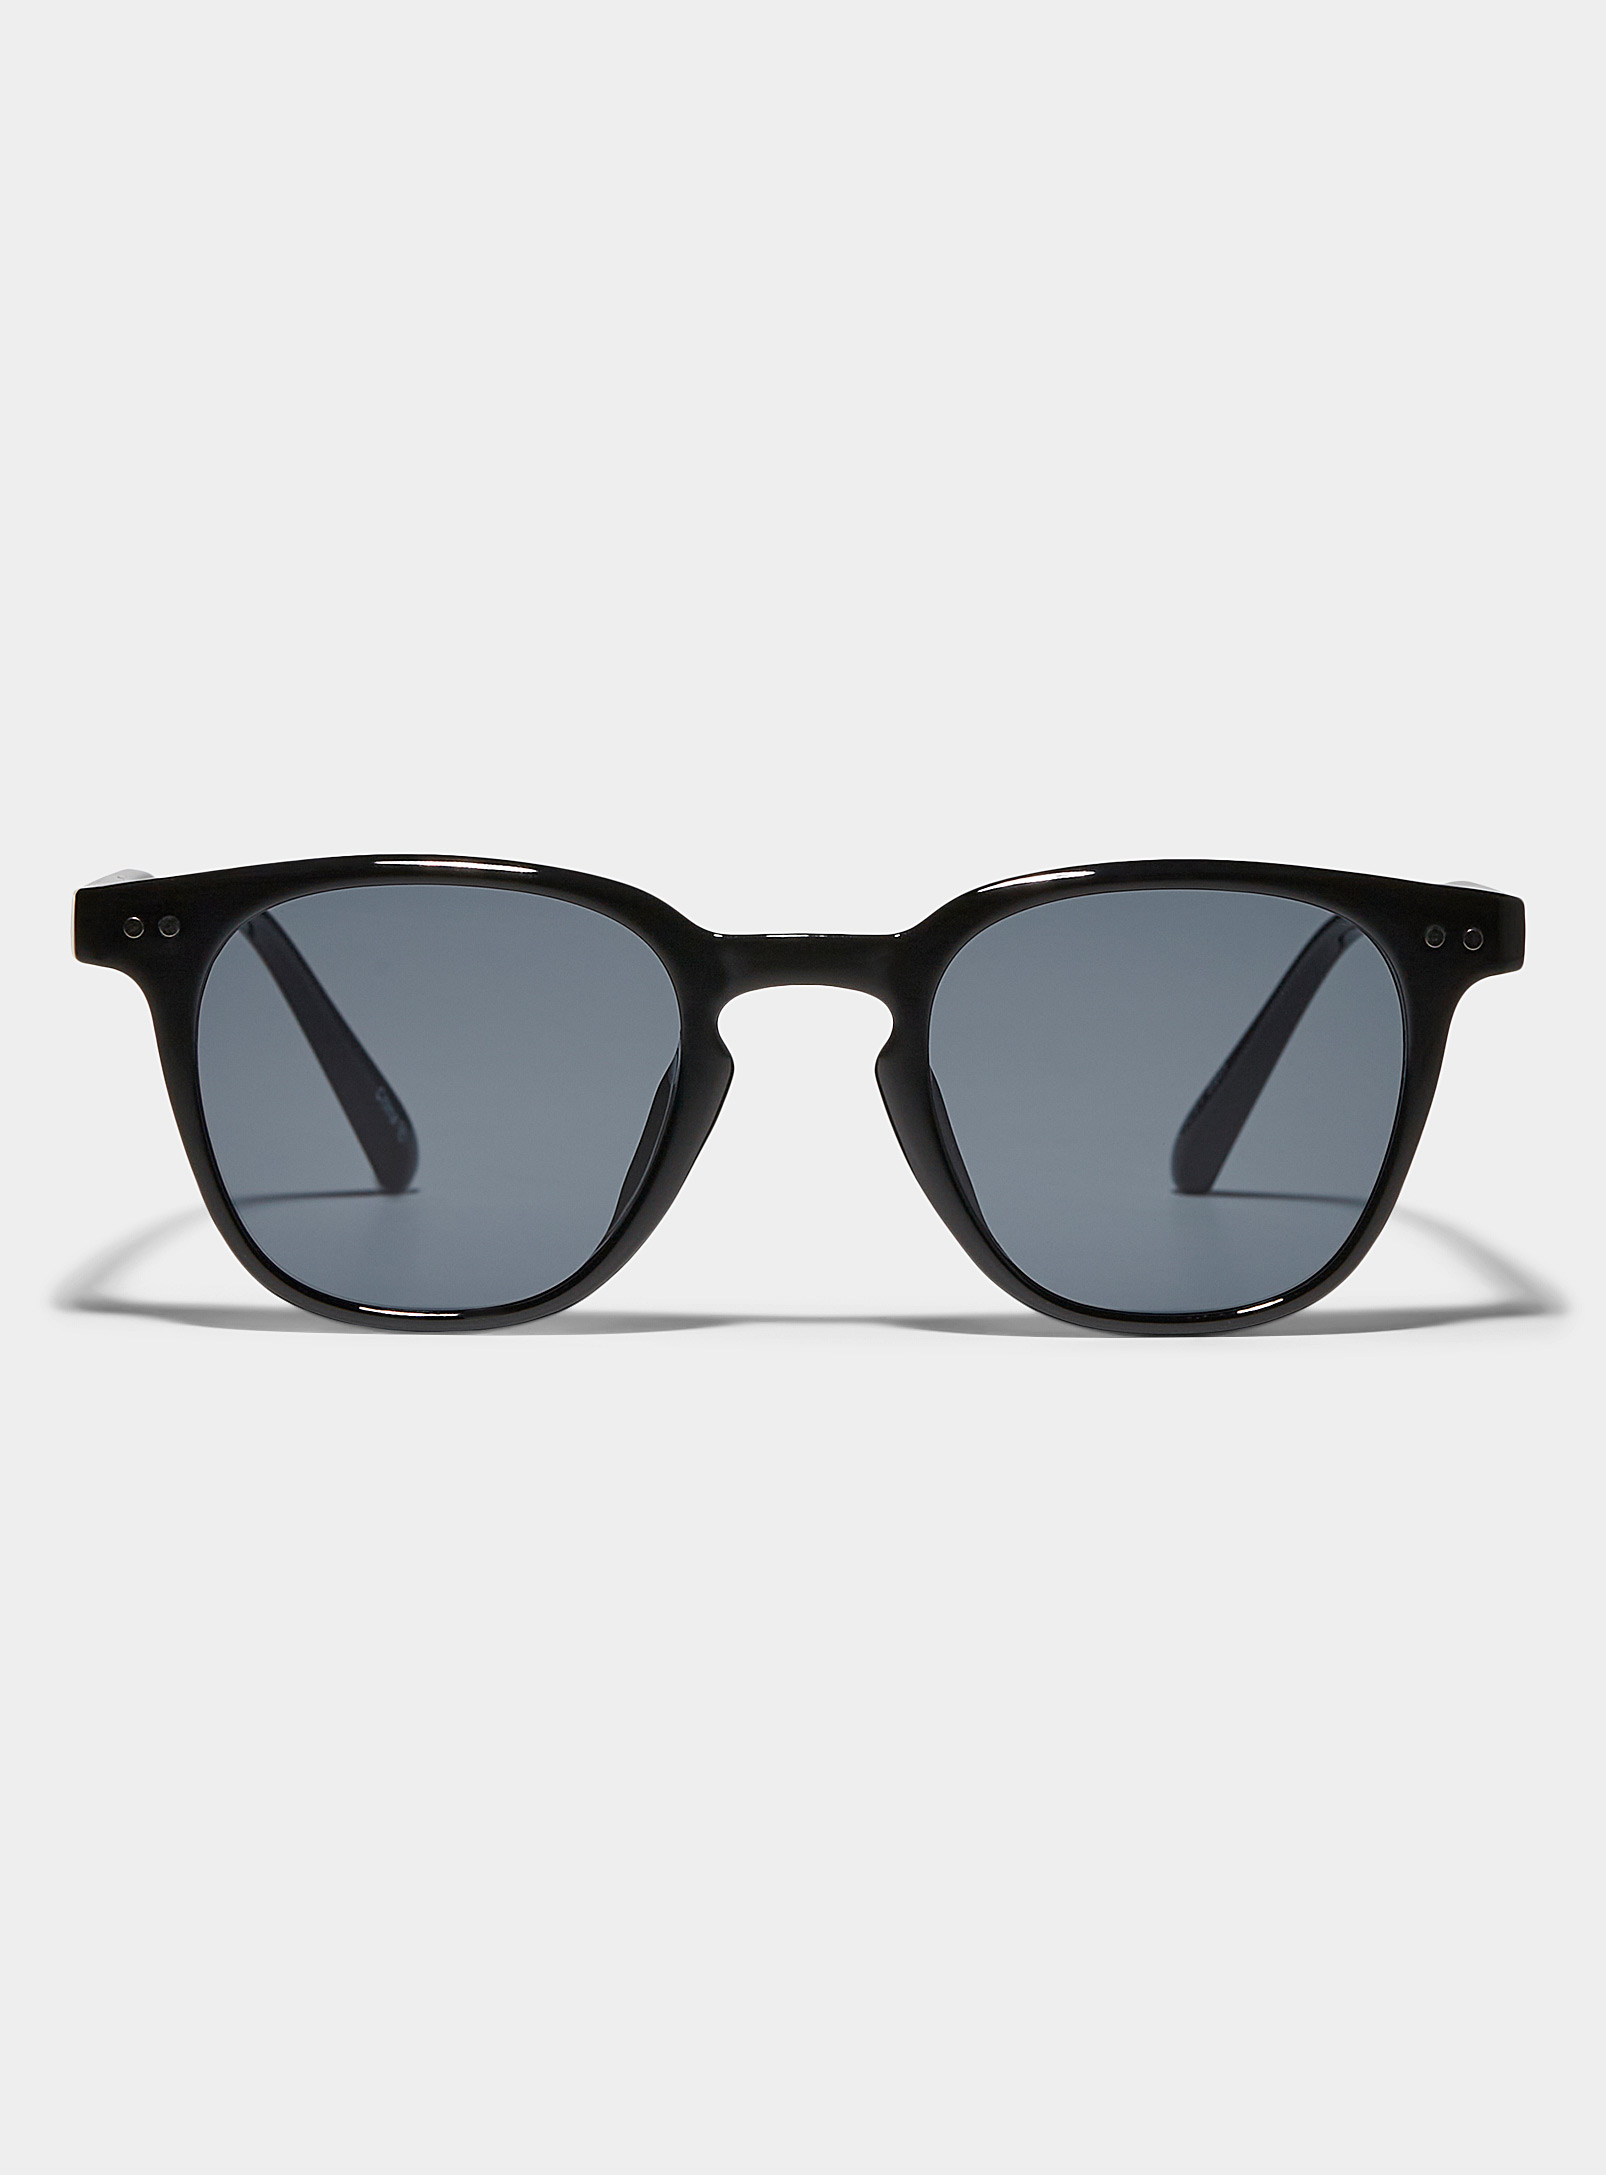 Le 31 - Men's Seth round sunglasses